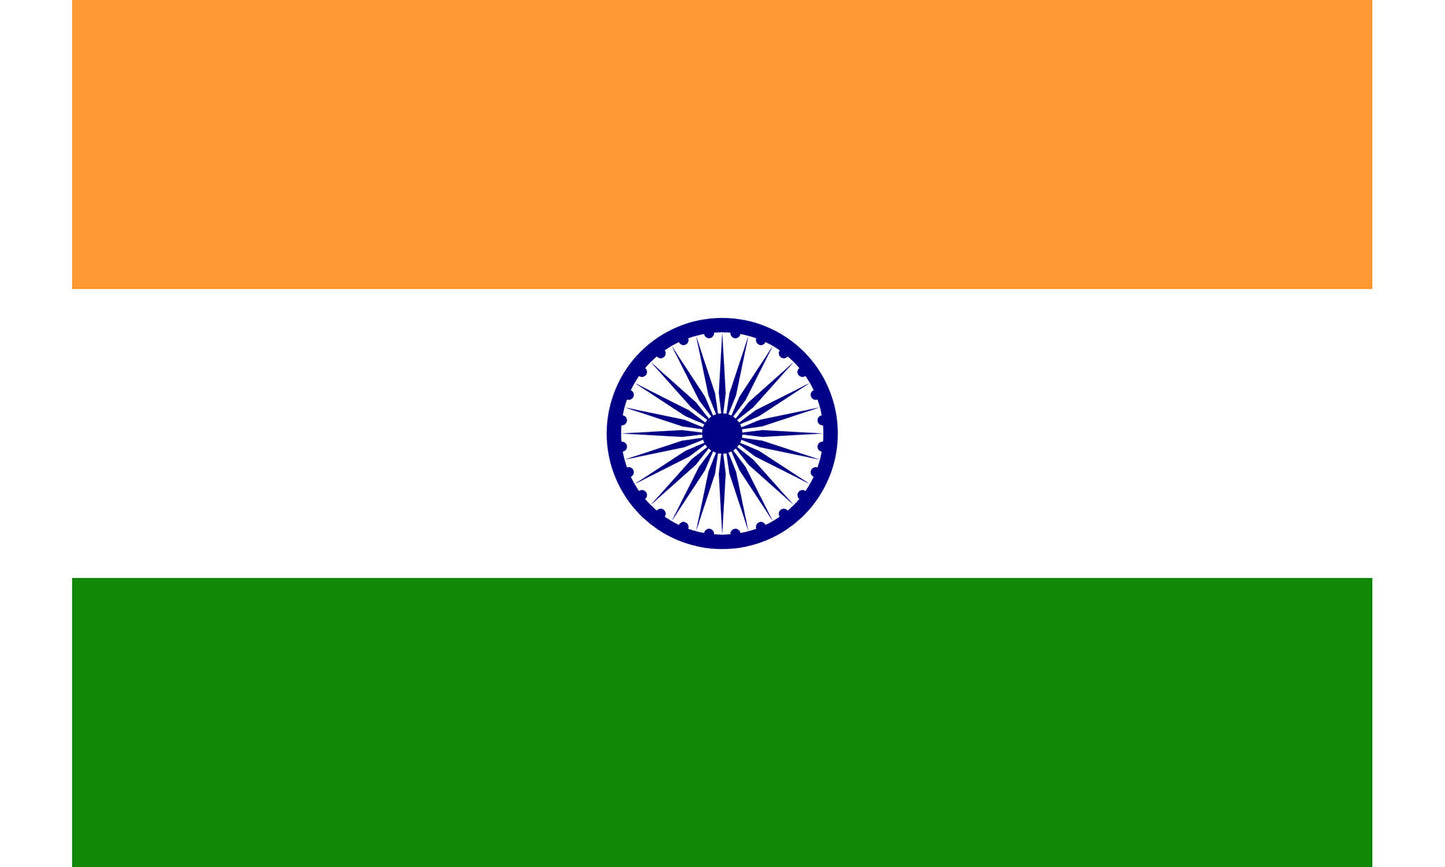 UF-IND-150x90 - флаг Индии